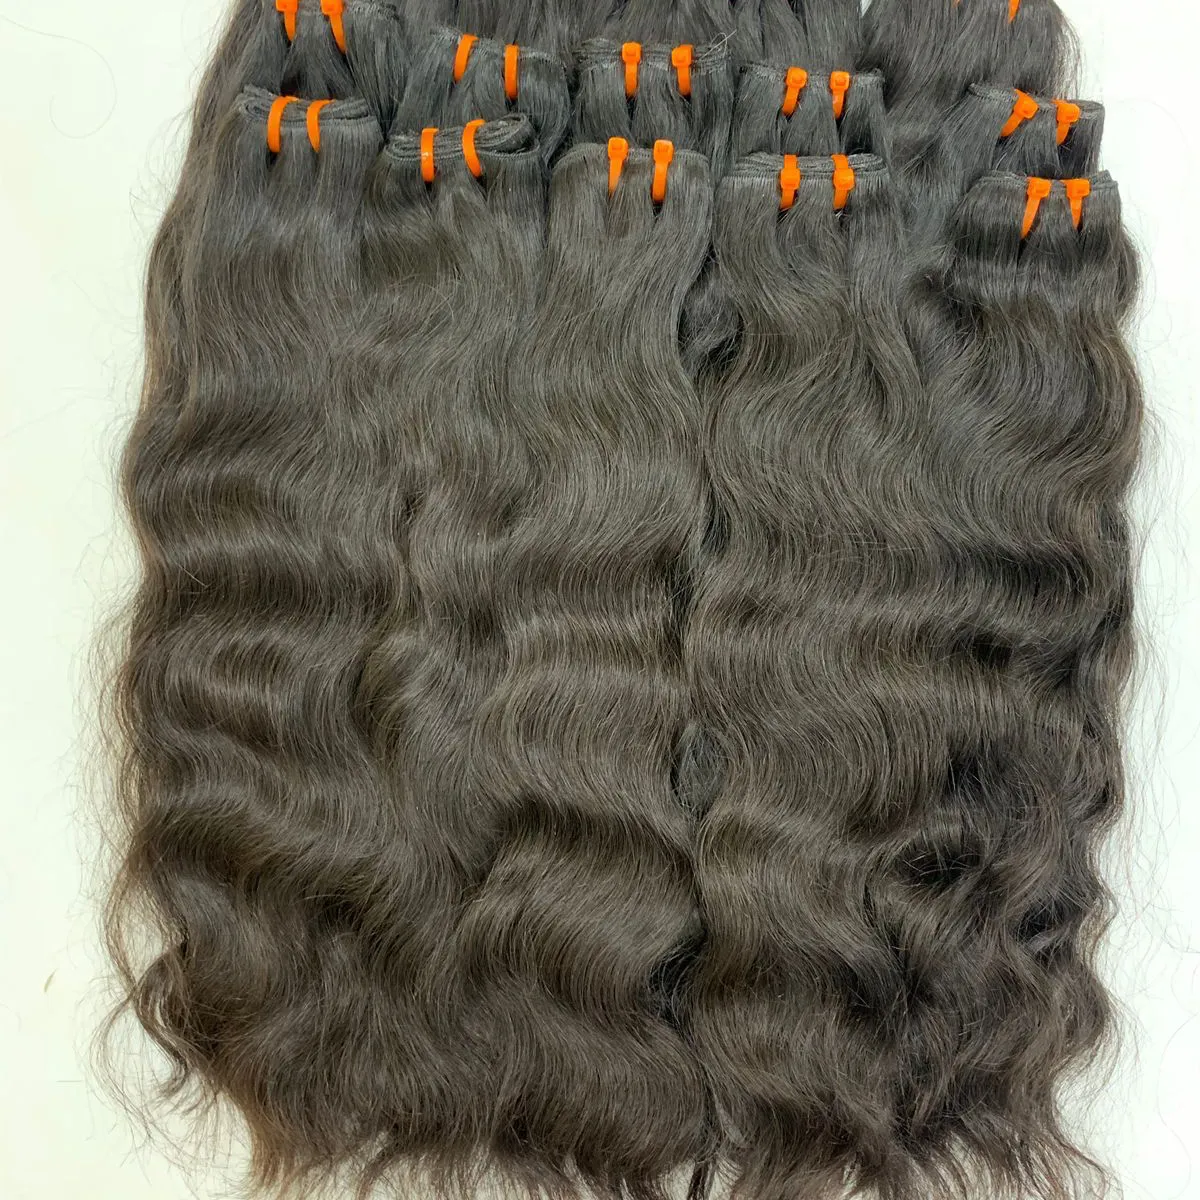 סיטונאי צרור שיער אדם הודי גולמי, חבילות שיער מיושרות לציפורן גולמית, מארגנות שיער אדם זולות כפולות